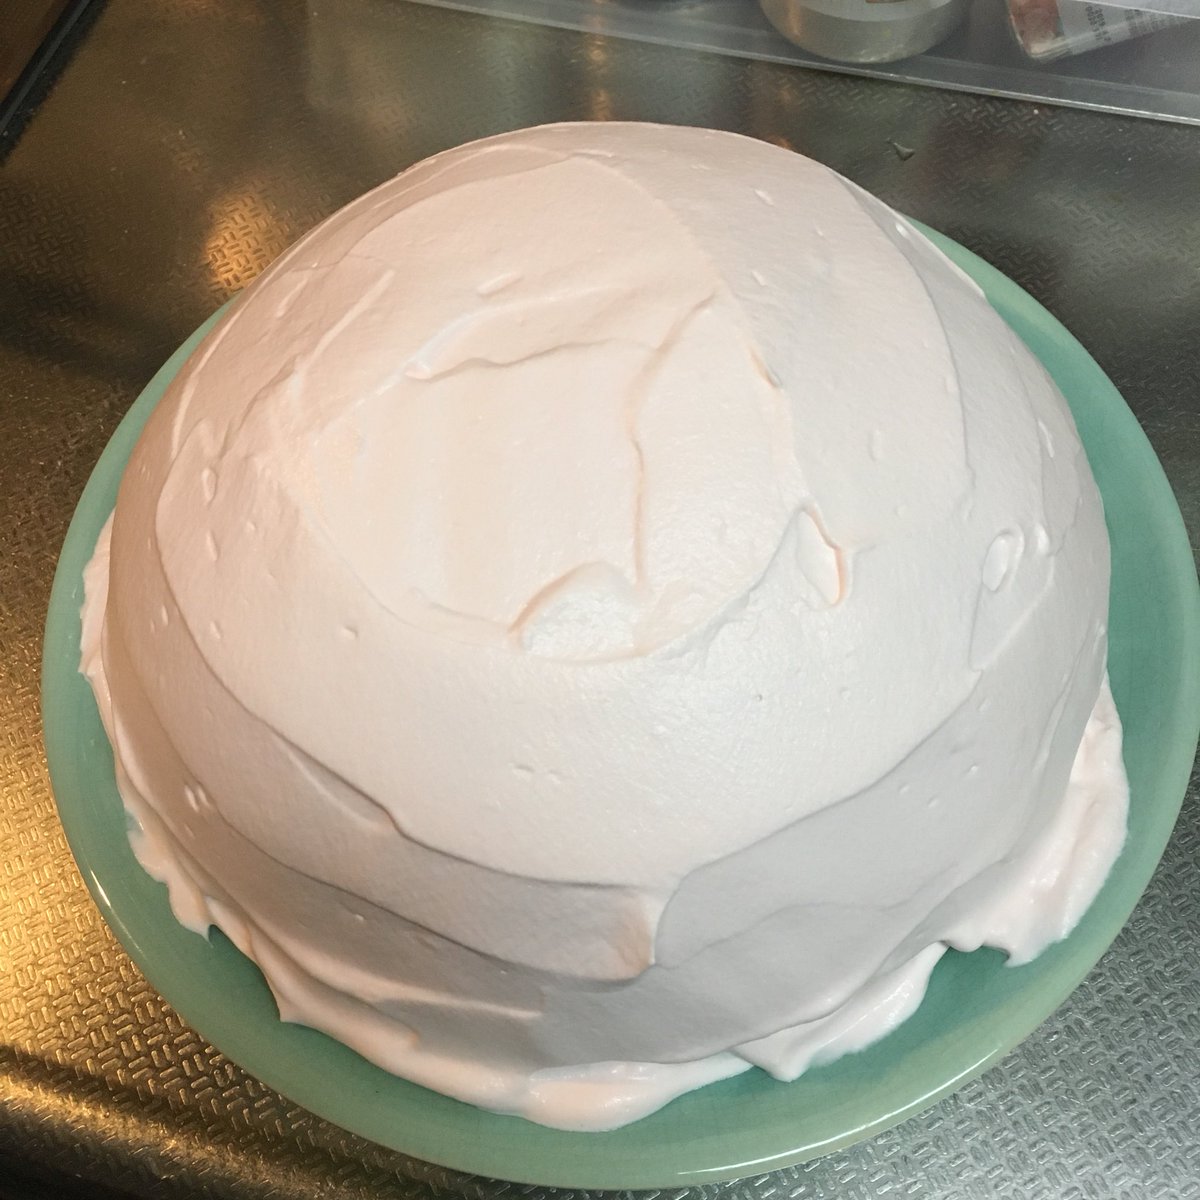 よく眠りたまに色々考える主婦 甘木サカヱ 娘のバースデーケーキ ドームケーキに初挑戦したら完全にサイズ感間違えて途方にくれてる 直径約30センチ